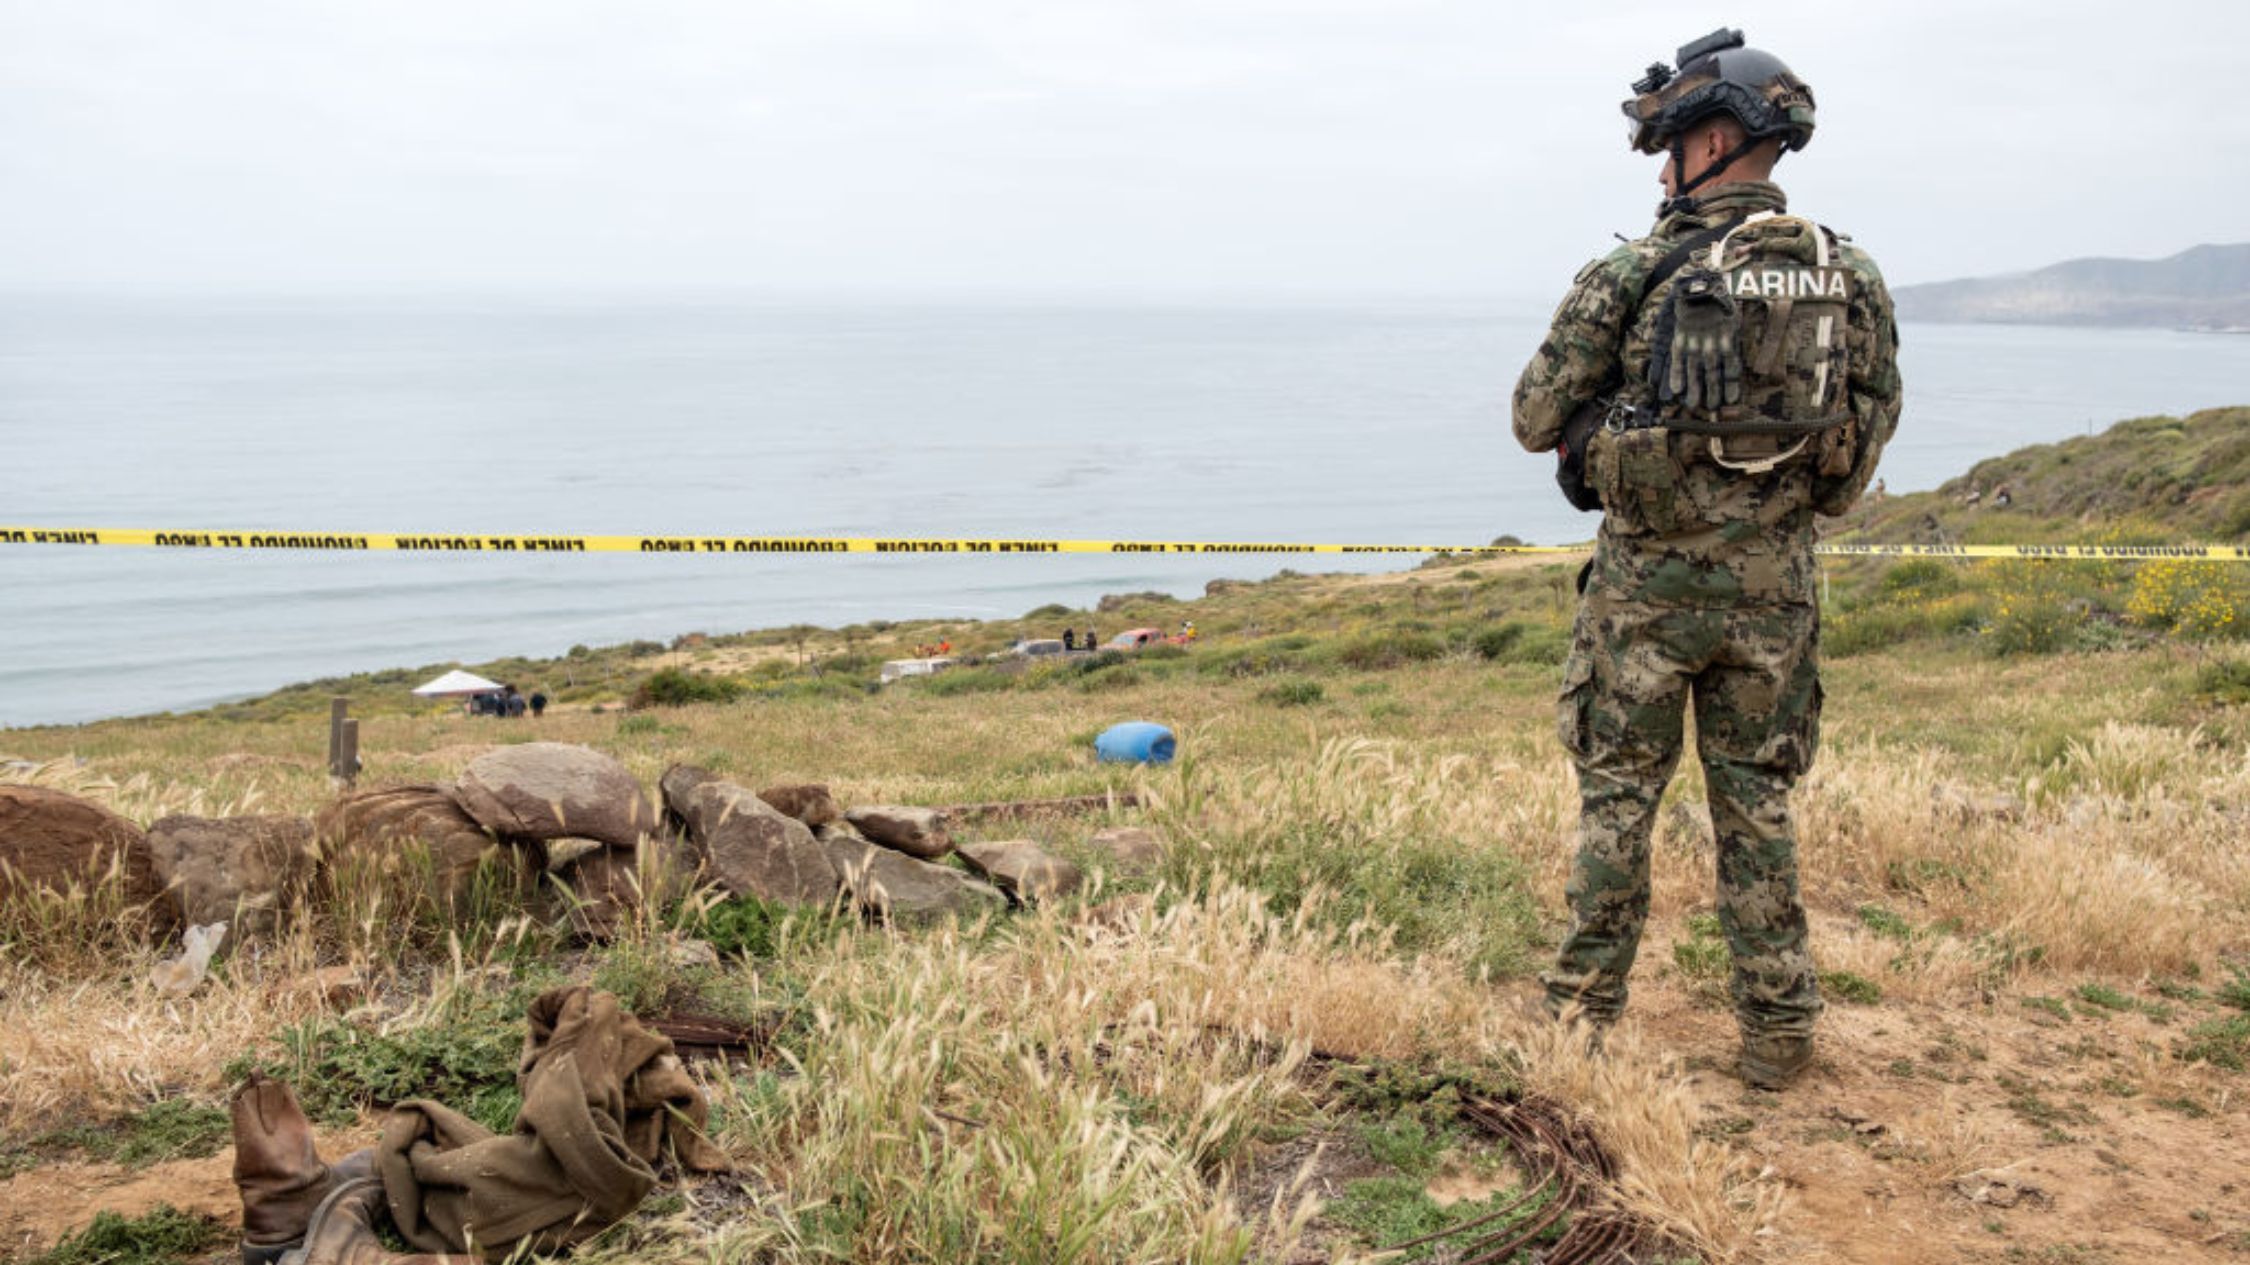 Cuerpos encontrados en Baja California corresponden a los turistas extranjeros desaparecidos, dice Fiscalía General